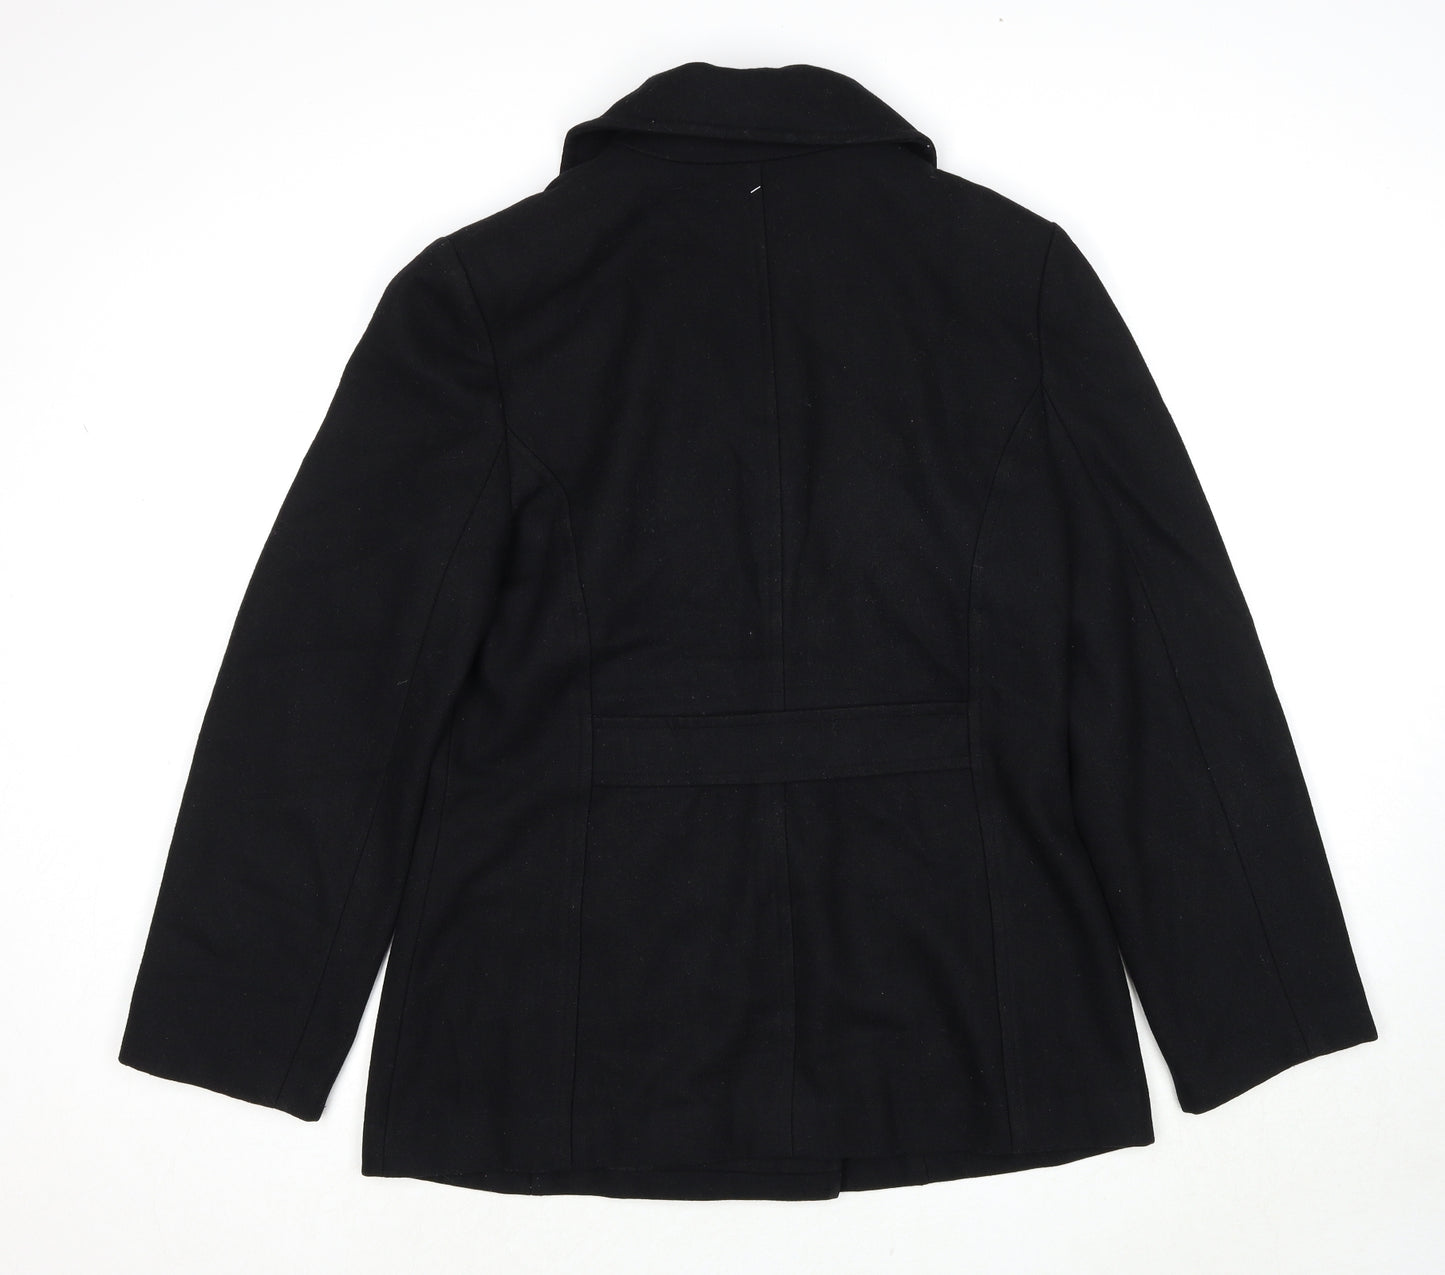 Suzy Shier Womens Black Pea Coat Jacket Size L Button